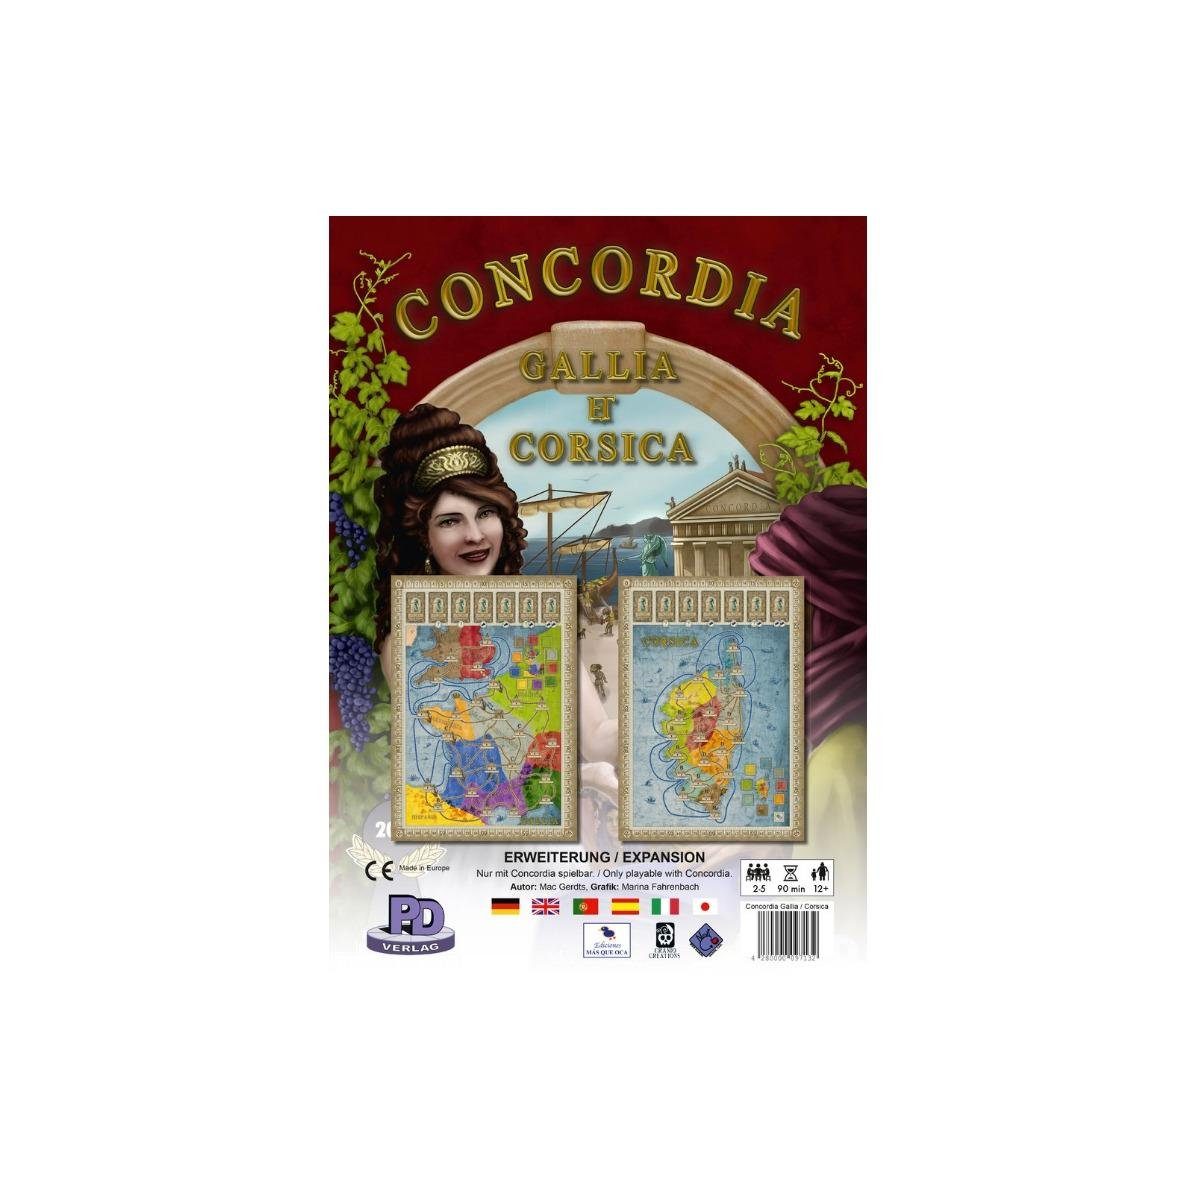 PD-Verlag Spiel, Familienspiel PDVD1009 - Gallia/Corsica - Concordia, für 2-5 Spieler,..., Strategiespiel